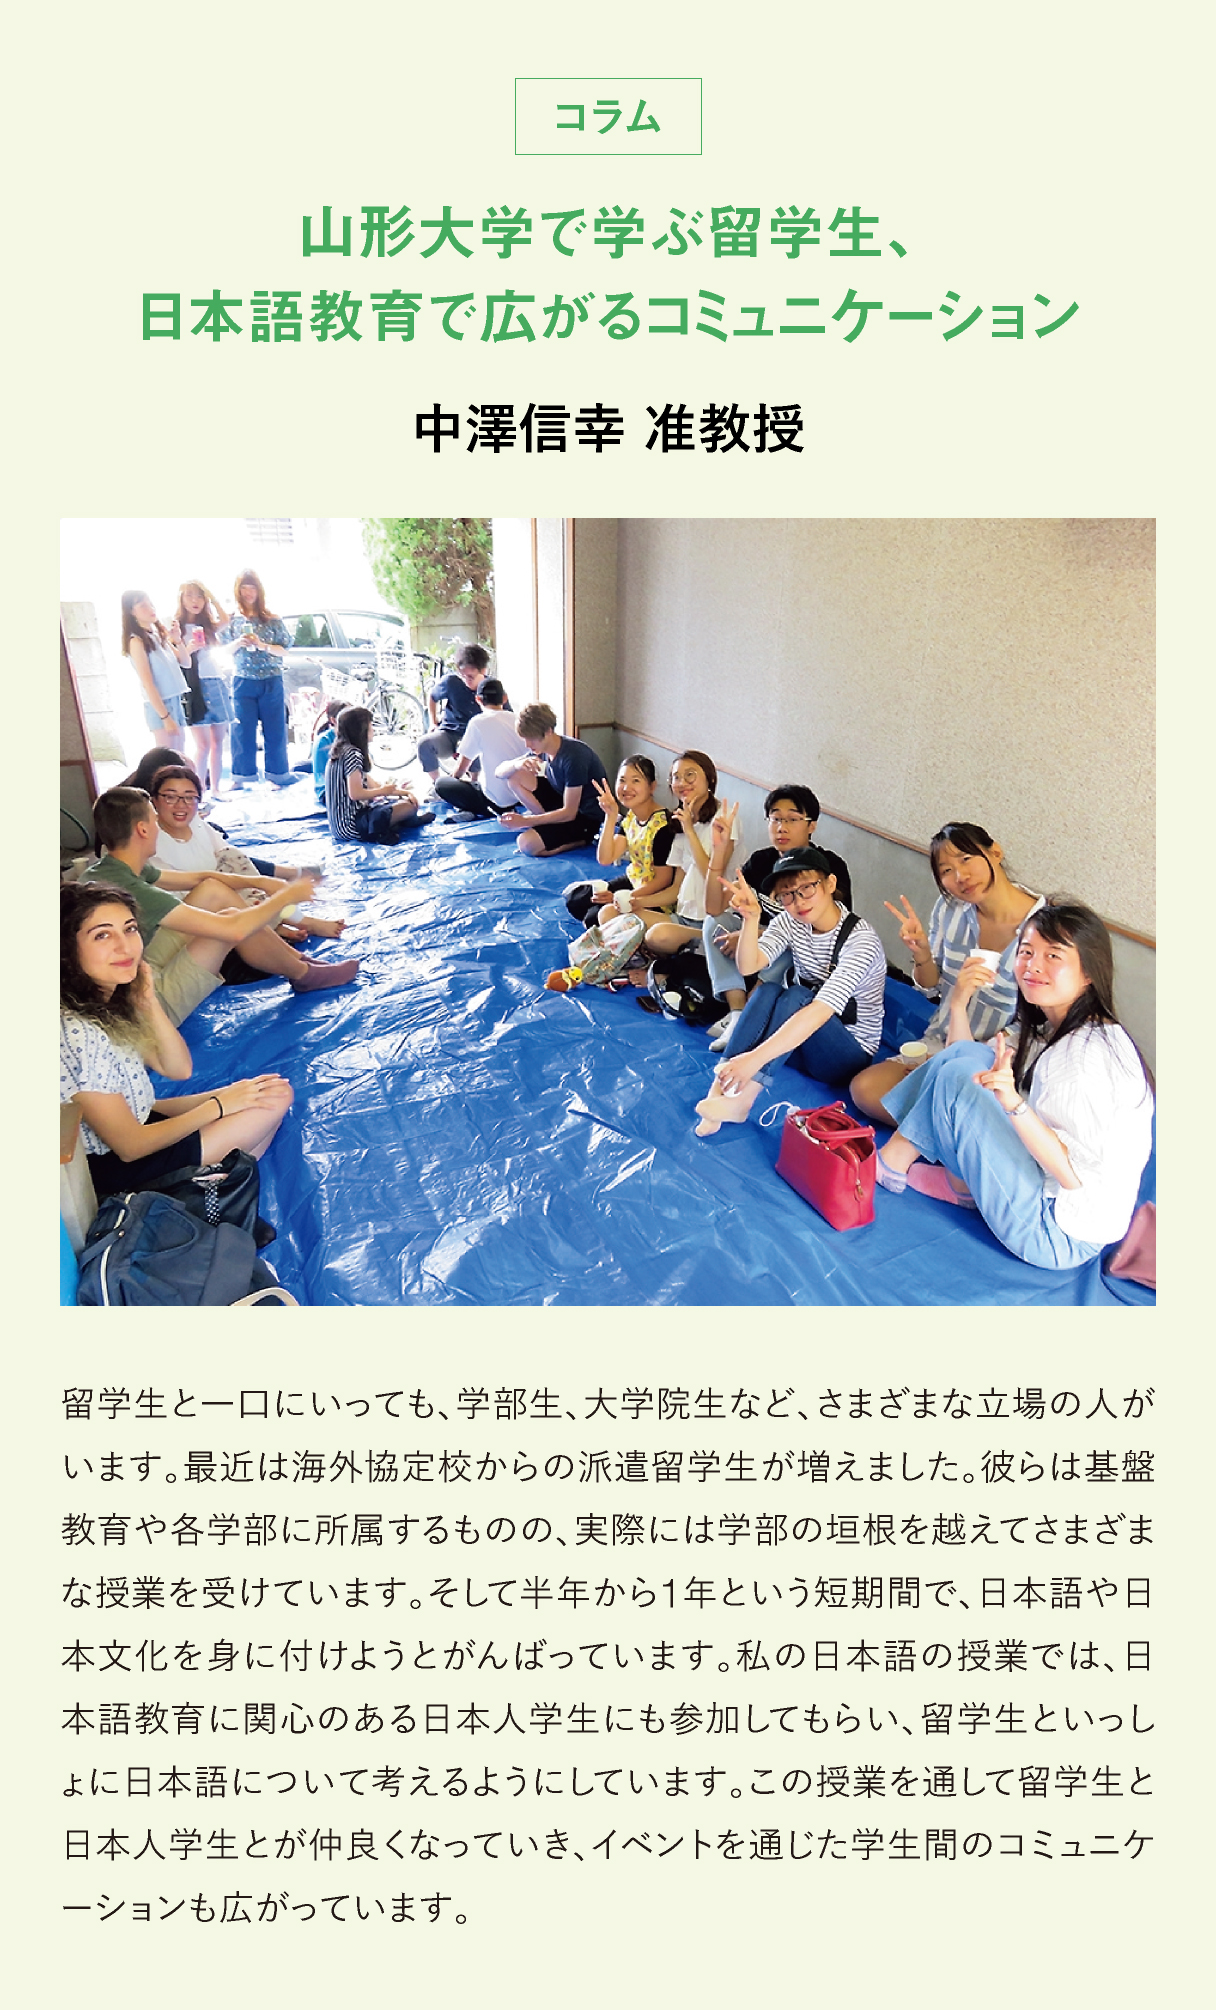 山形大学で学ぶ留学生、 日本語教育で広がるコミュニケーション